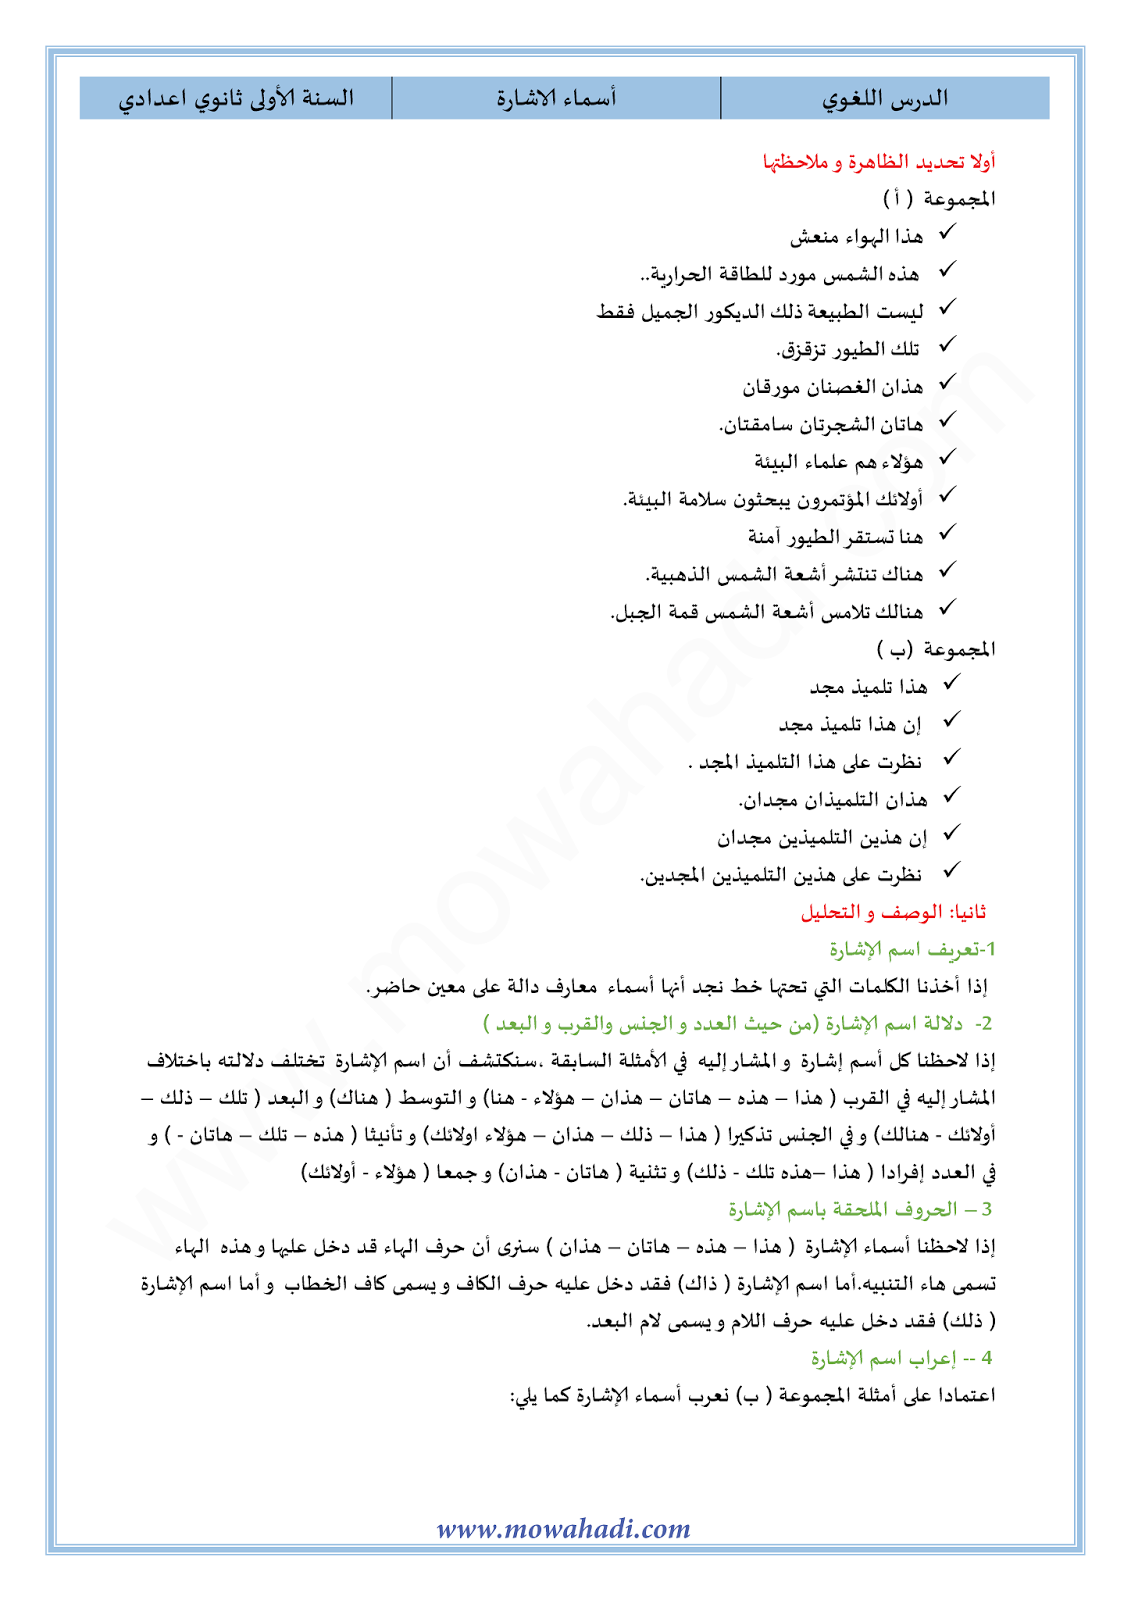 الدرس اللغوي أسماء الإشارة للسنة الأولى اعدادي في مادة اللغة العربية 16-cours-dars-loghawi1_001